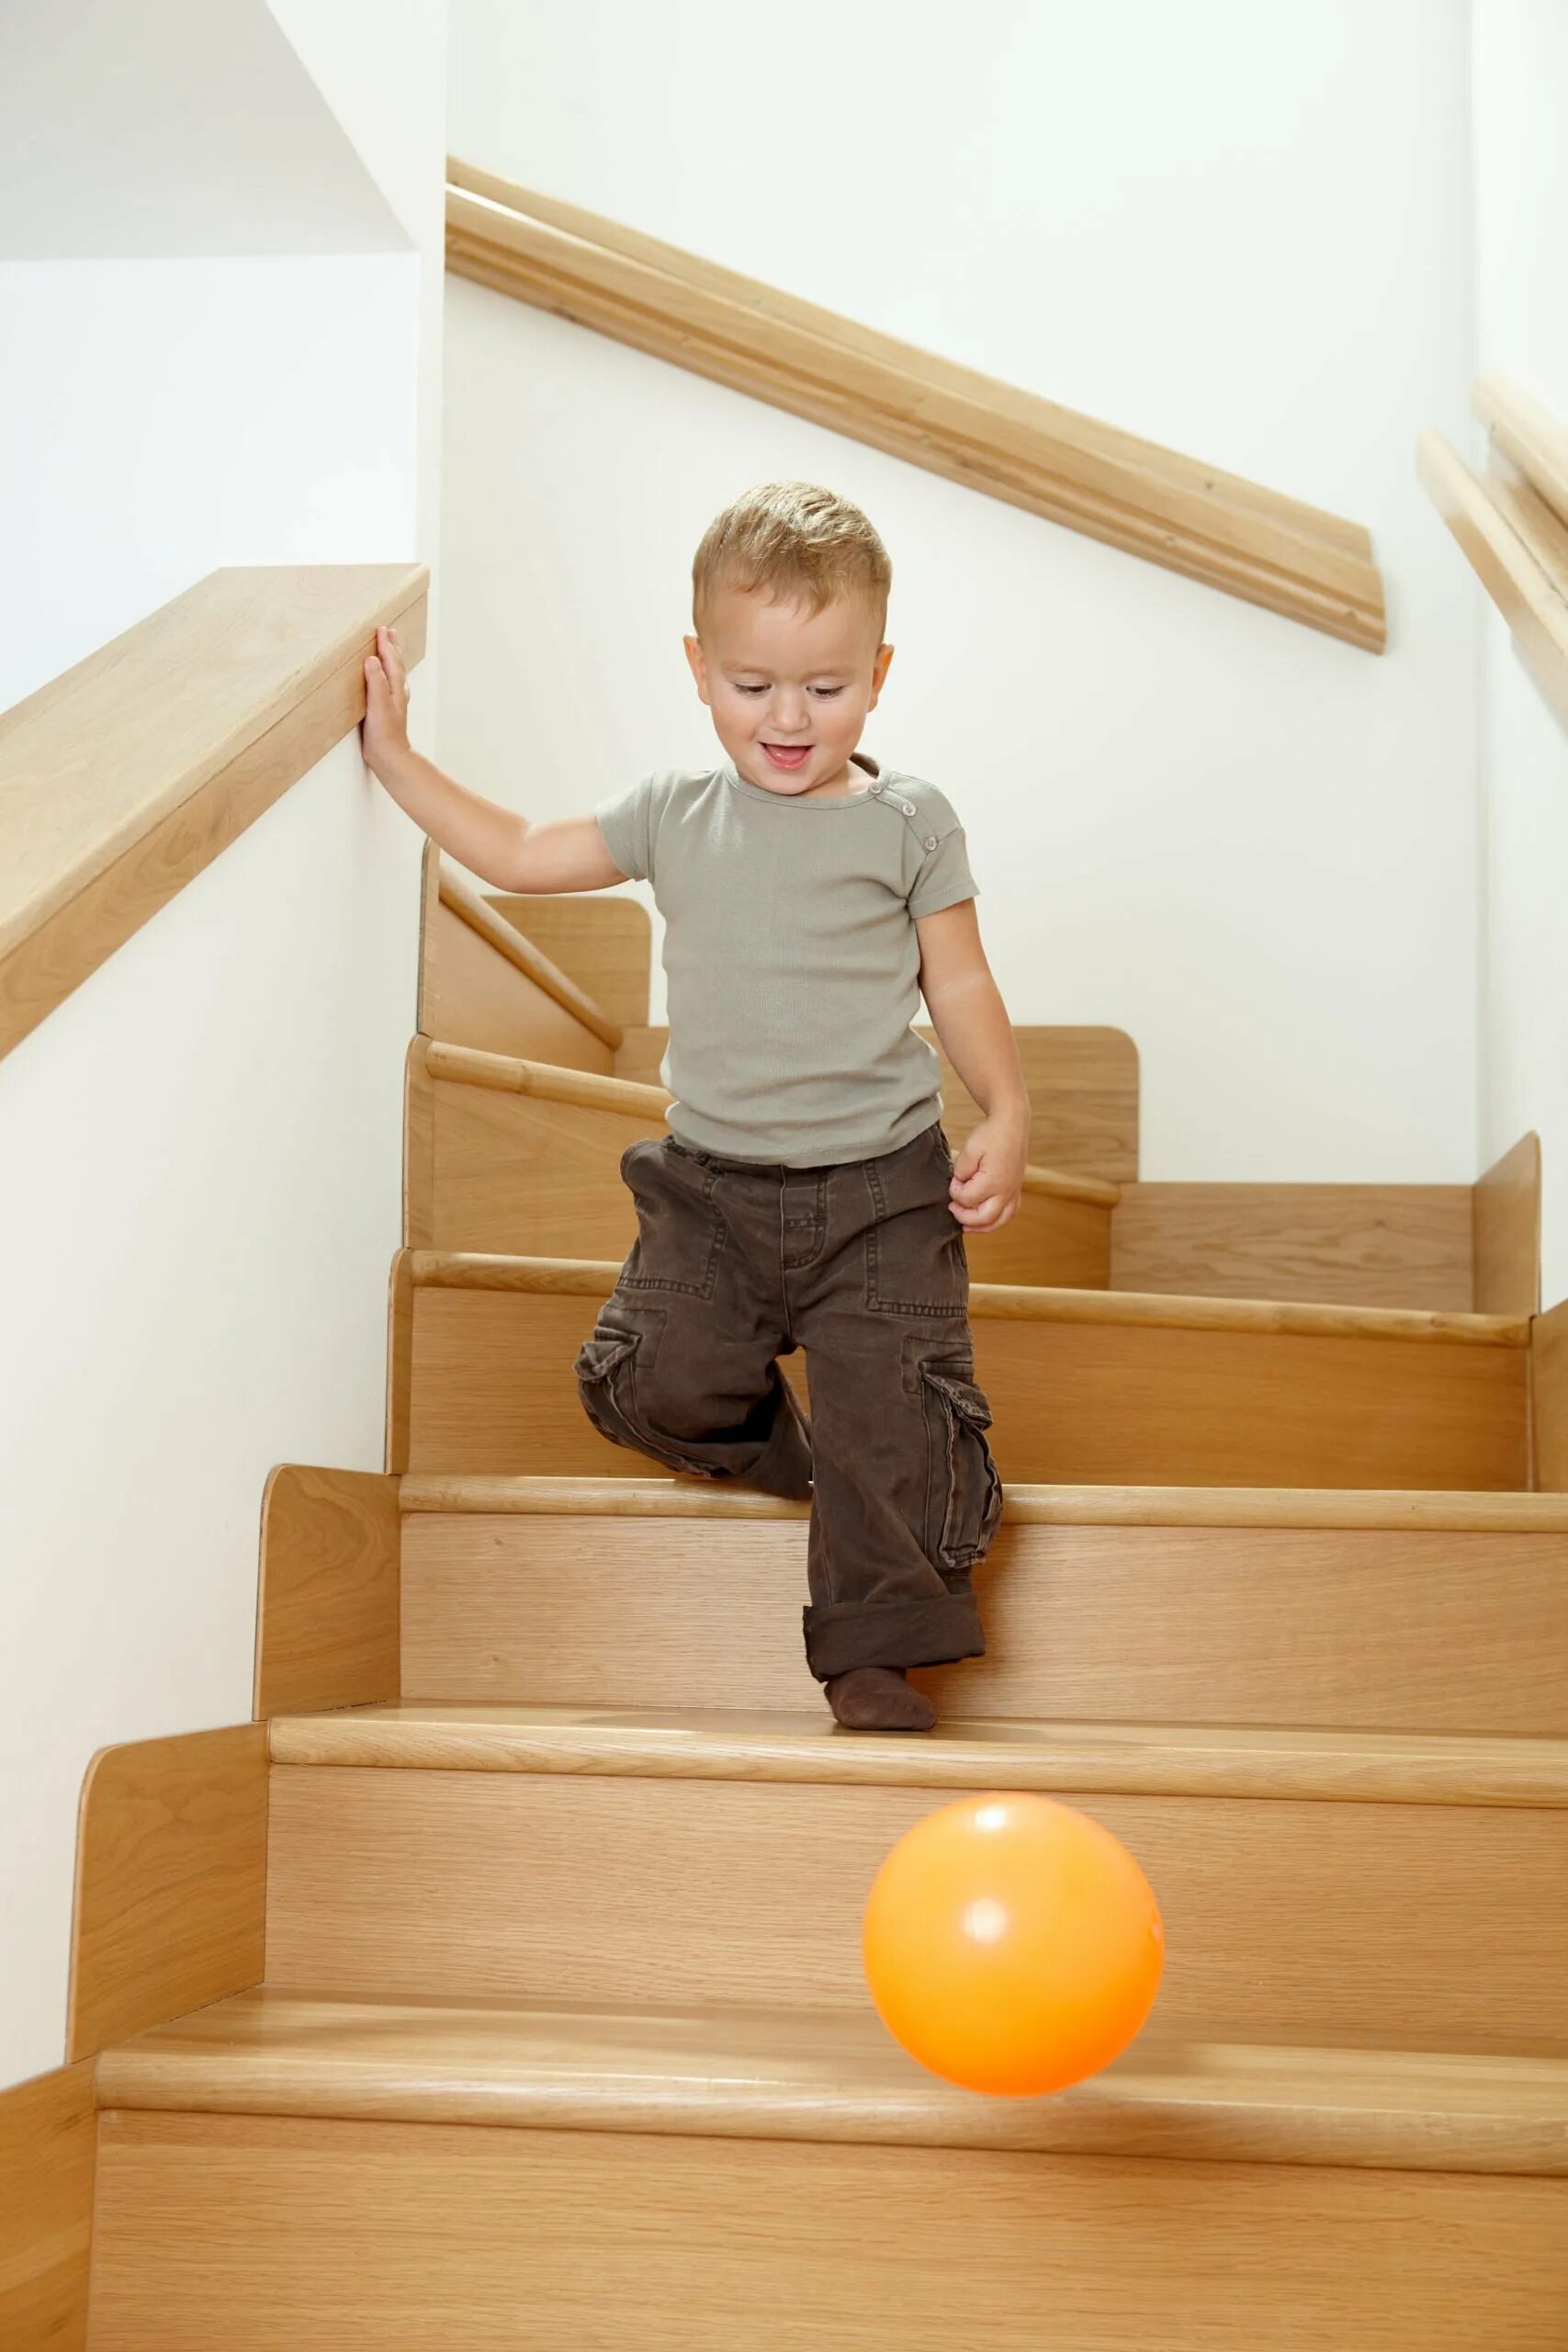 Подняться по деревянной лестнице. Лестница для детей. Лестница в детском саду. Мальчик спускается с лестницы. Мальчик на лестнице.